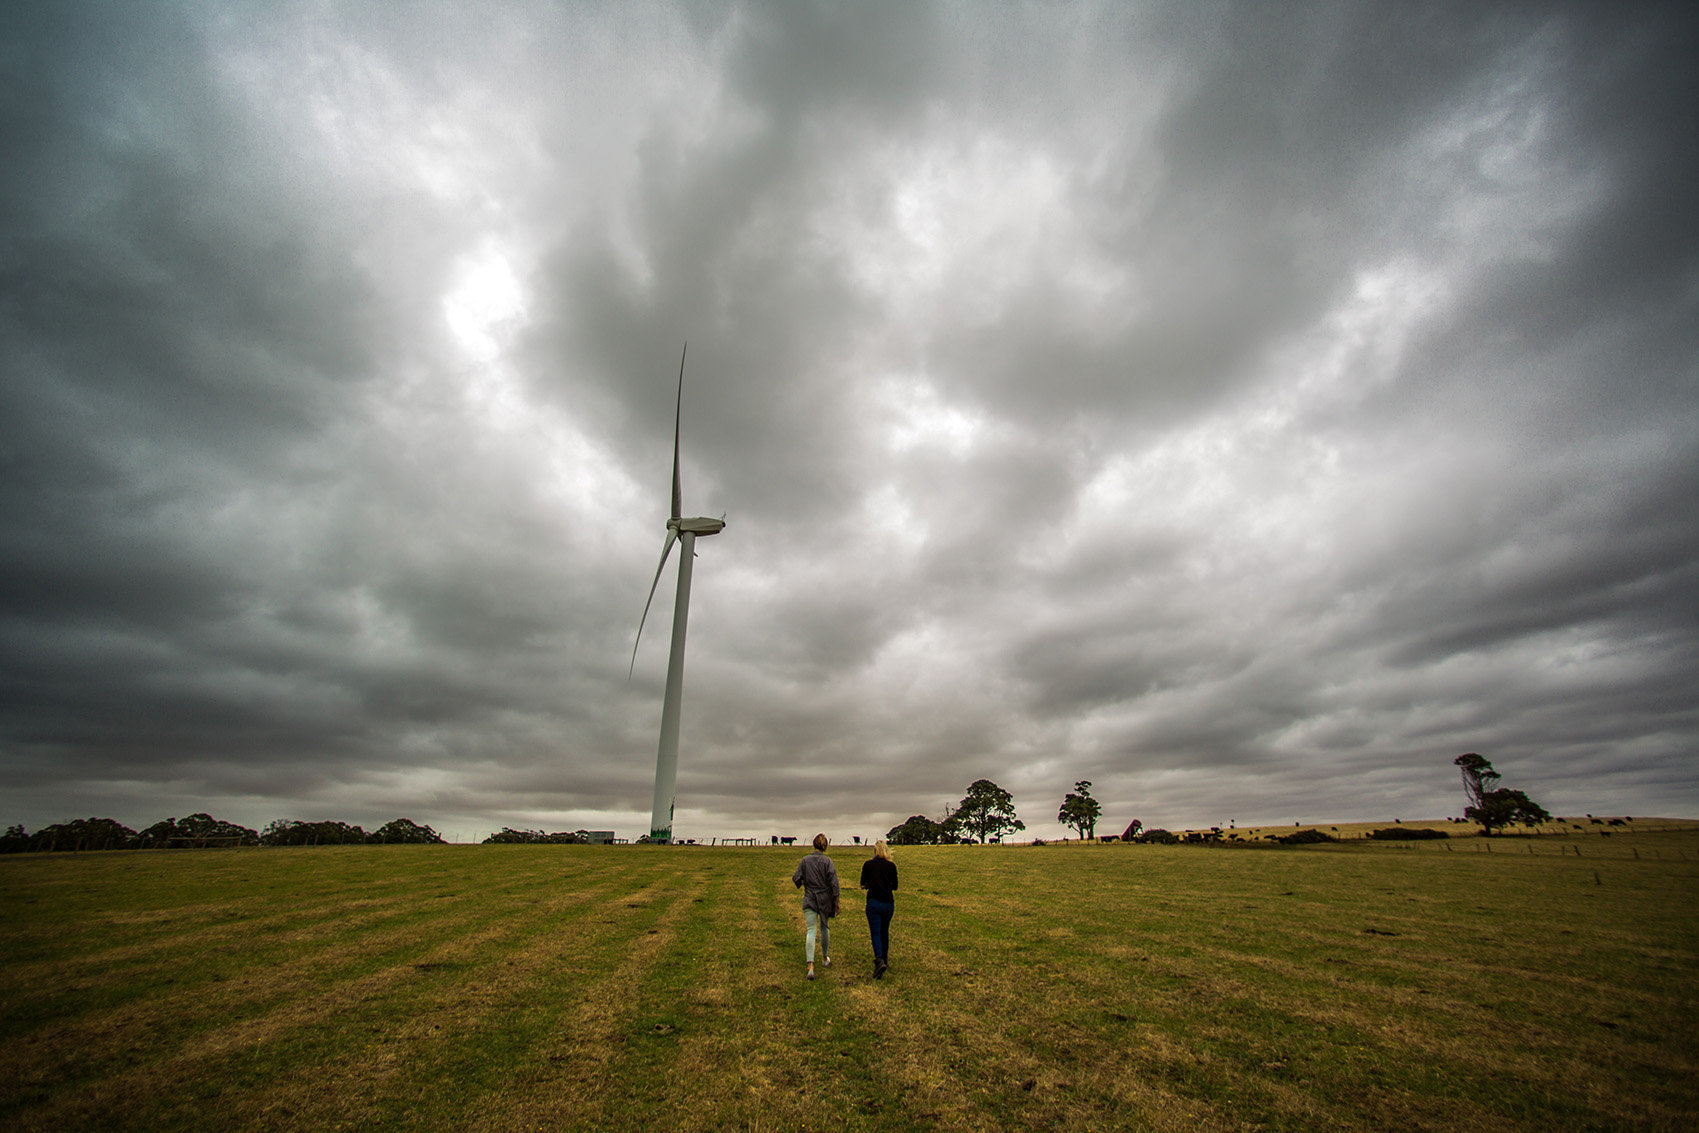 Hepburn Wind, a 4.1MW two-turbine wind farm cooperative